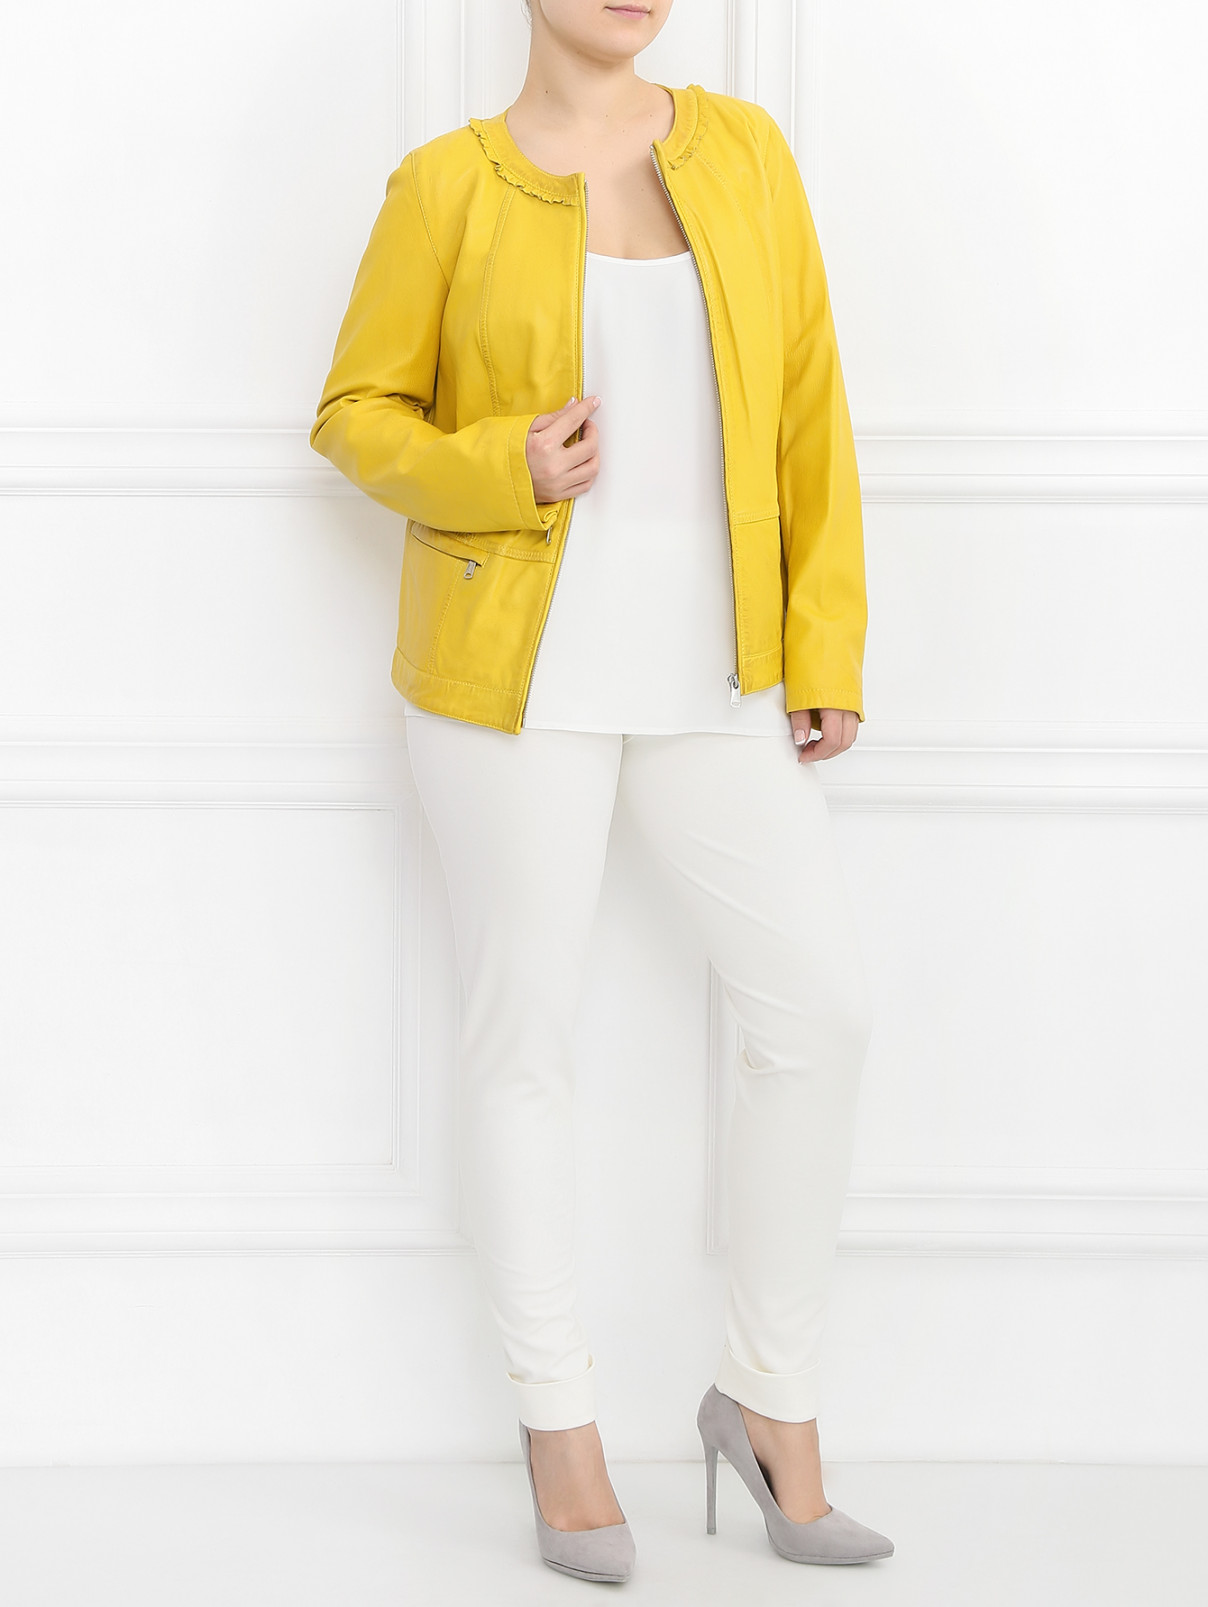 Куртка из кожи Marina Sport  –  Модель Общий вид  – Цвет:  Желтый